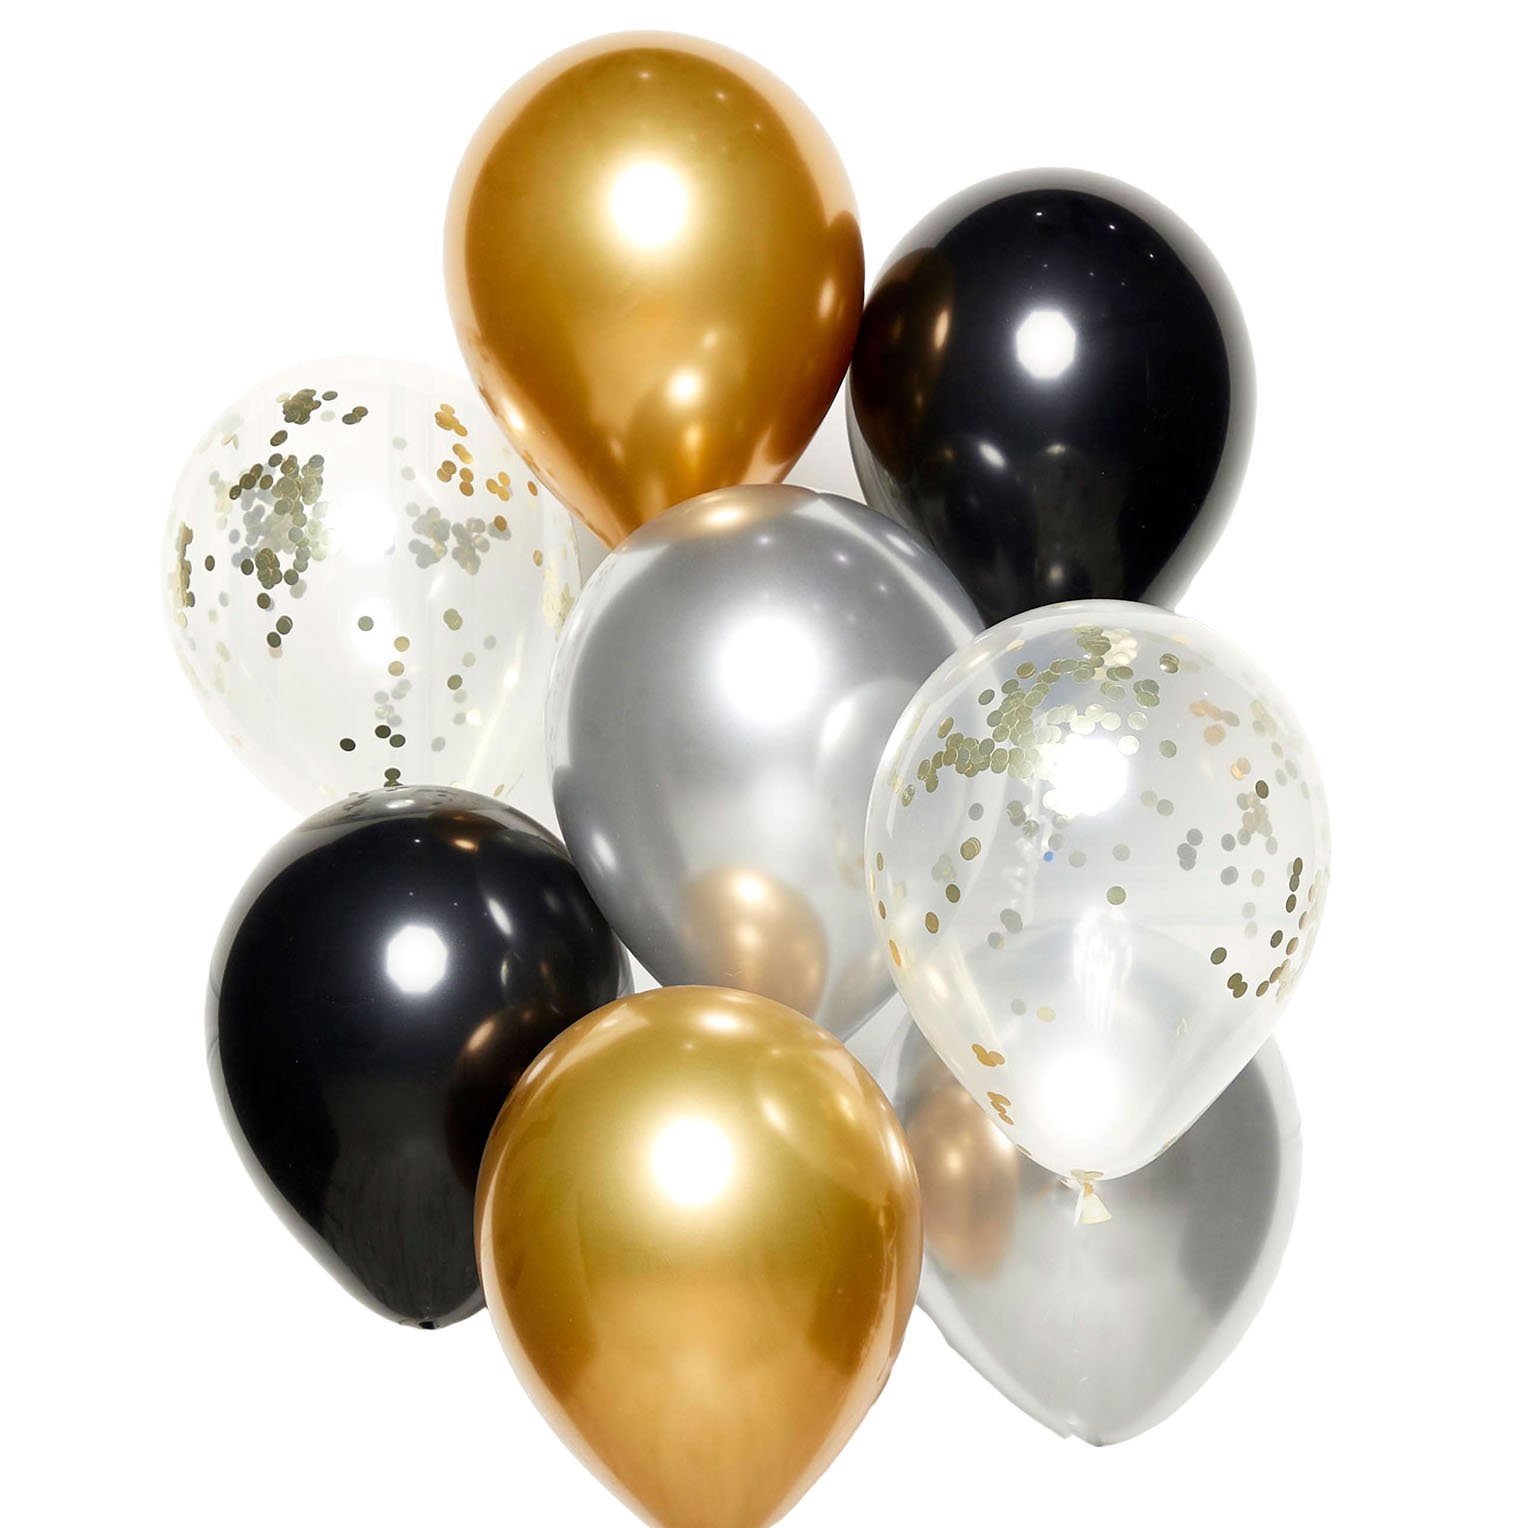 Ballon numéro 6 ans Splatters avec vide standard 72cm - Partywinkel